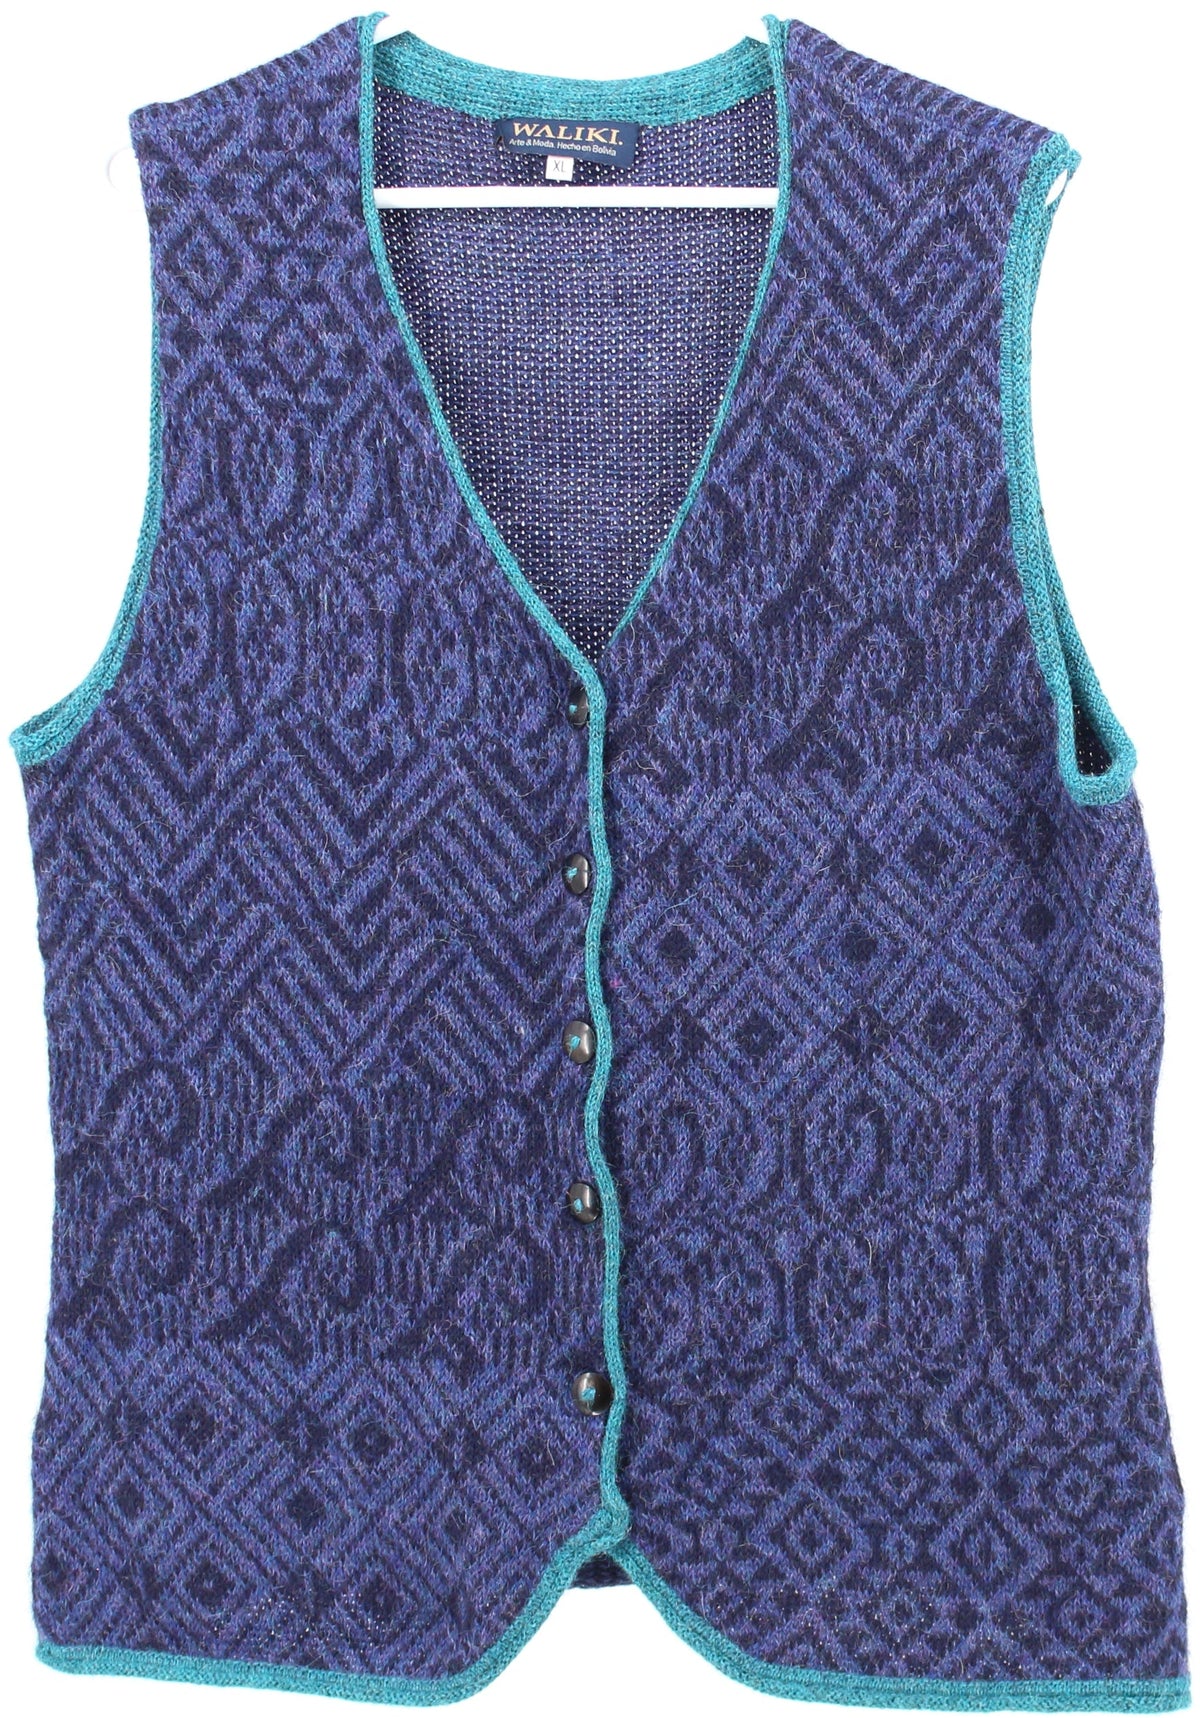 Waliki Blue Jacquard Knit Vest